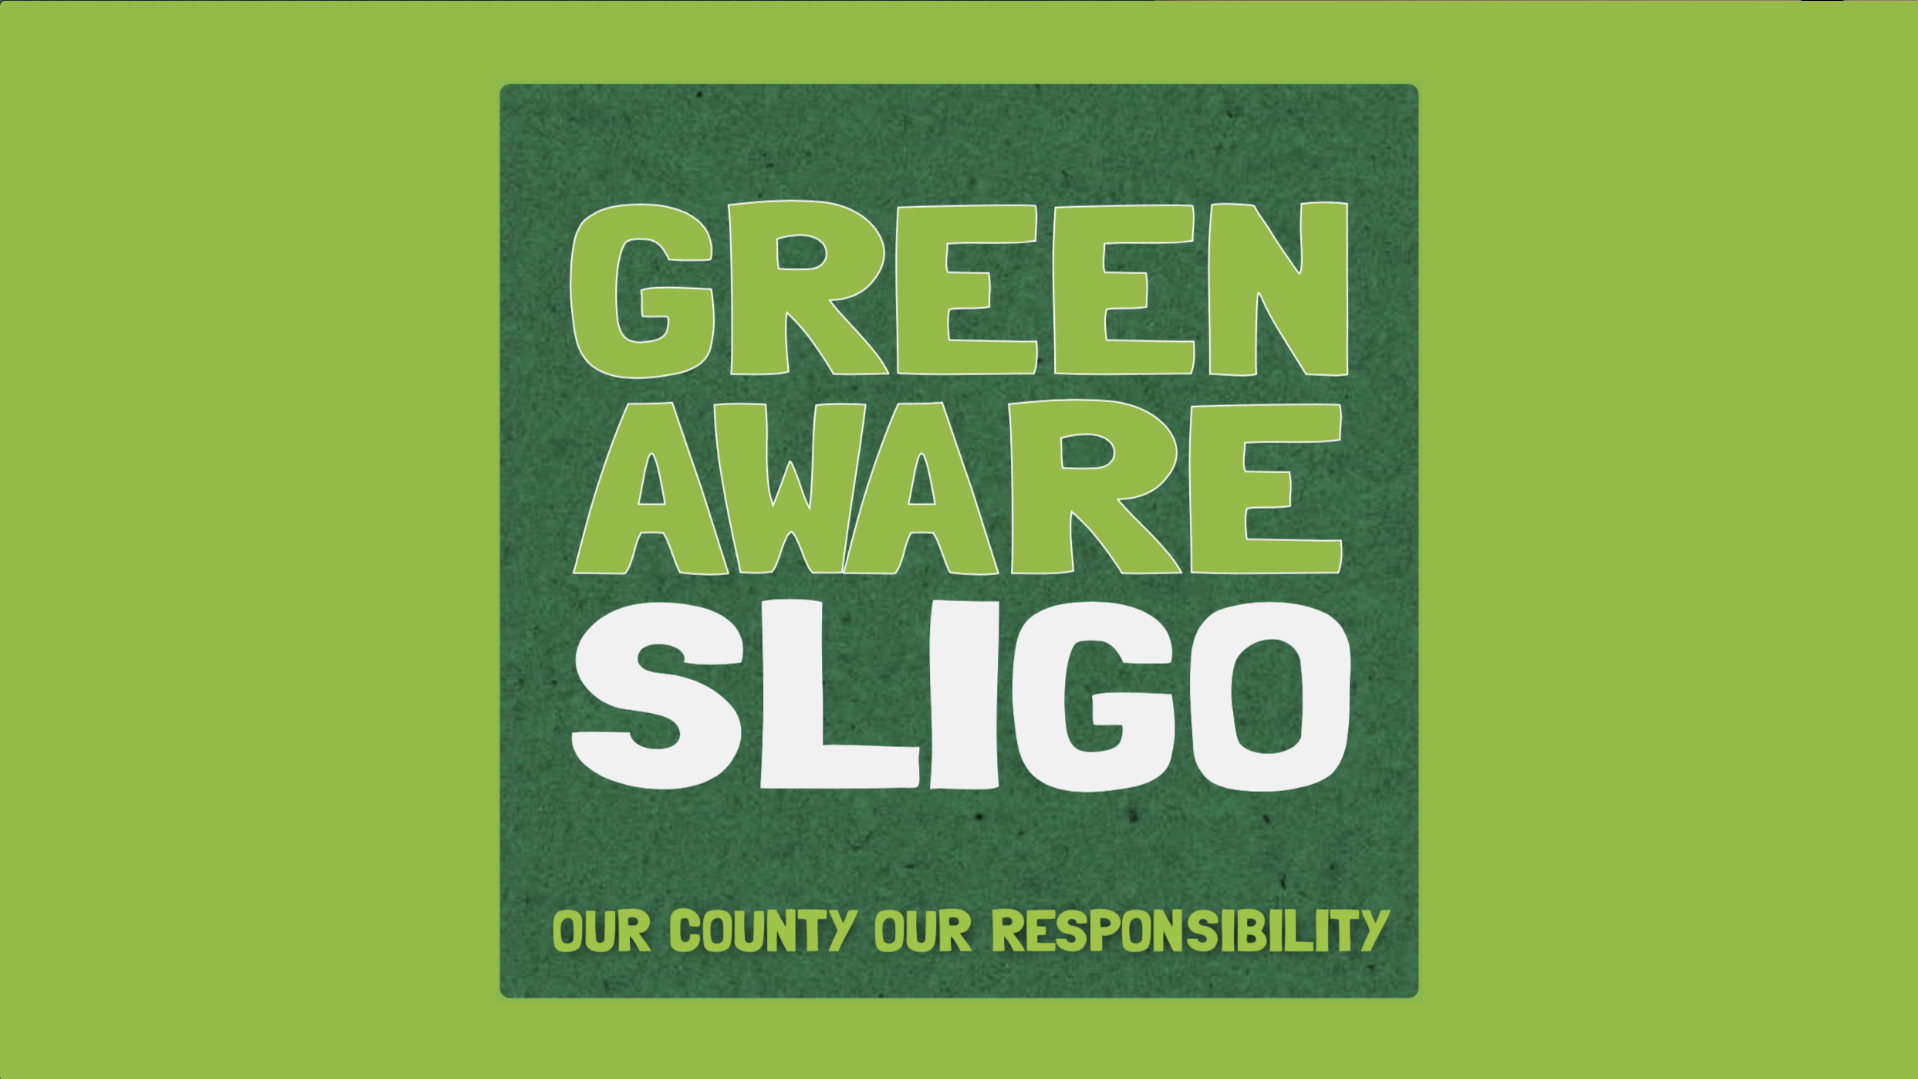 Blog 1 - When did Green Aware Sligo Begin?